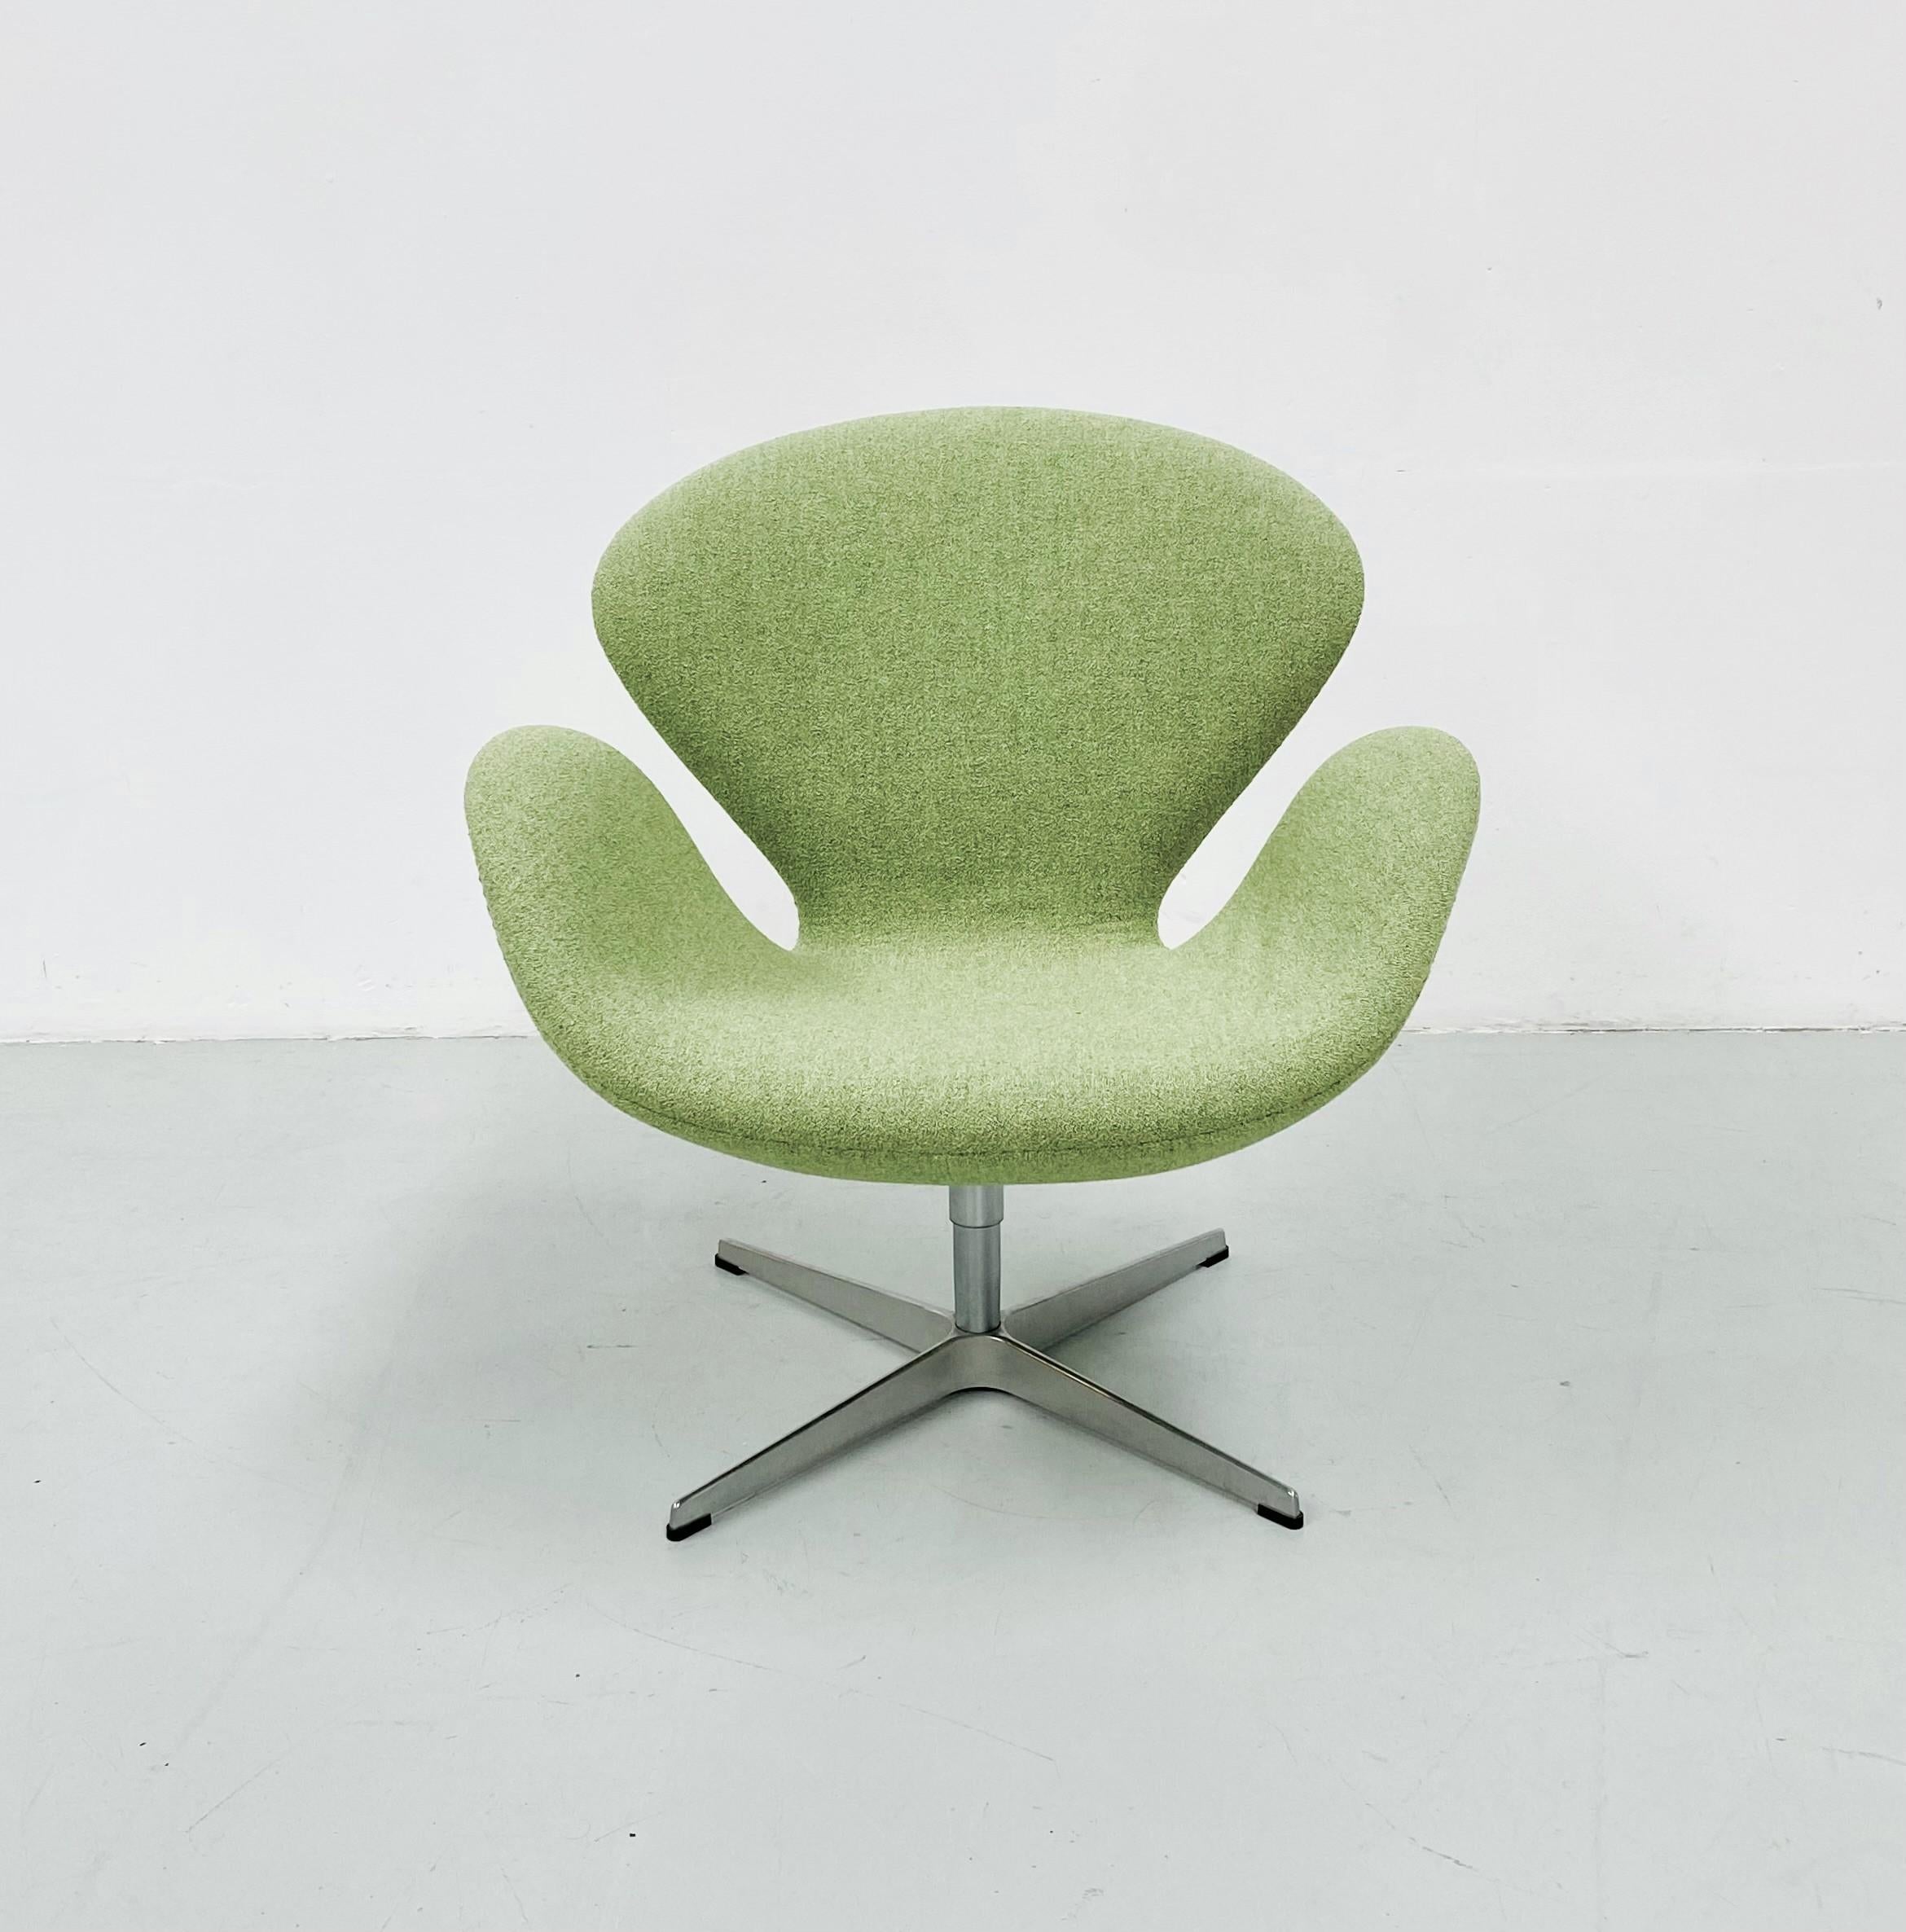 Cette chaise Swan a été conçue par Arne Jacobsen en 1958 pour le hall d'entrée et les salons de l'hôtel SAS Royal à Copenhague. Le design ne contient aucune ligne droite, ce qui lui confère un aspect organique et doux malgré sa simplicité et son